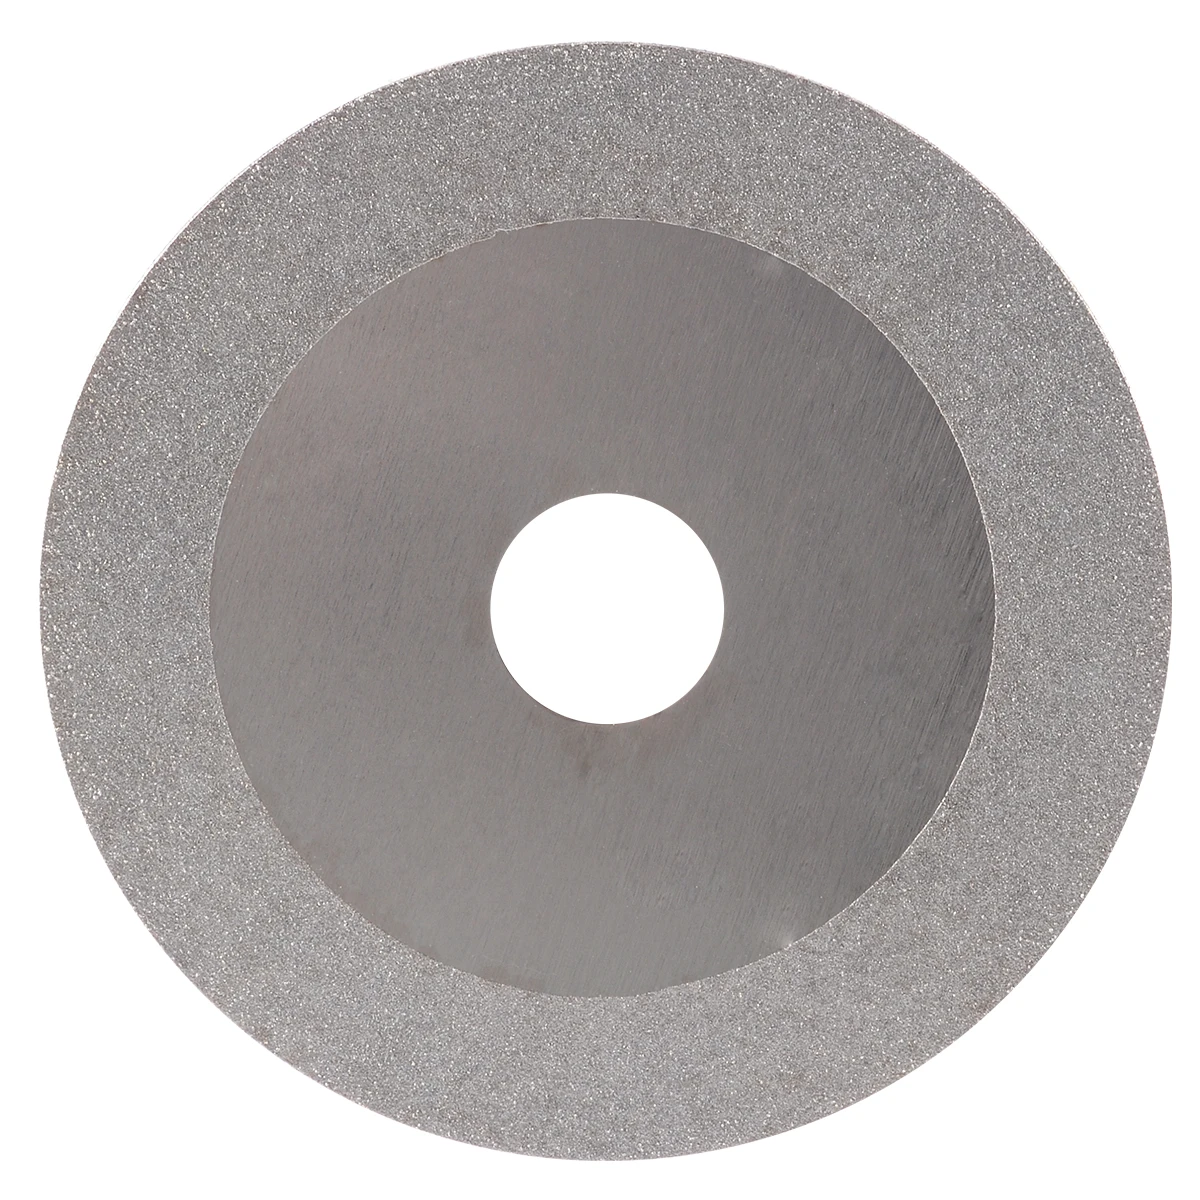 4 дюйма алмазный шлифовальный круг шлифовальный диск для углового шлифовального диска мини шлифовальный станок пильный диск 100*20 мм